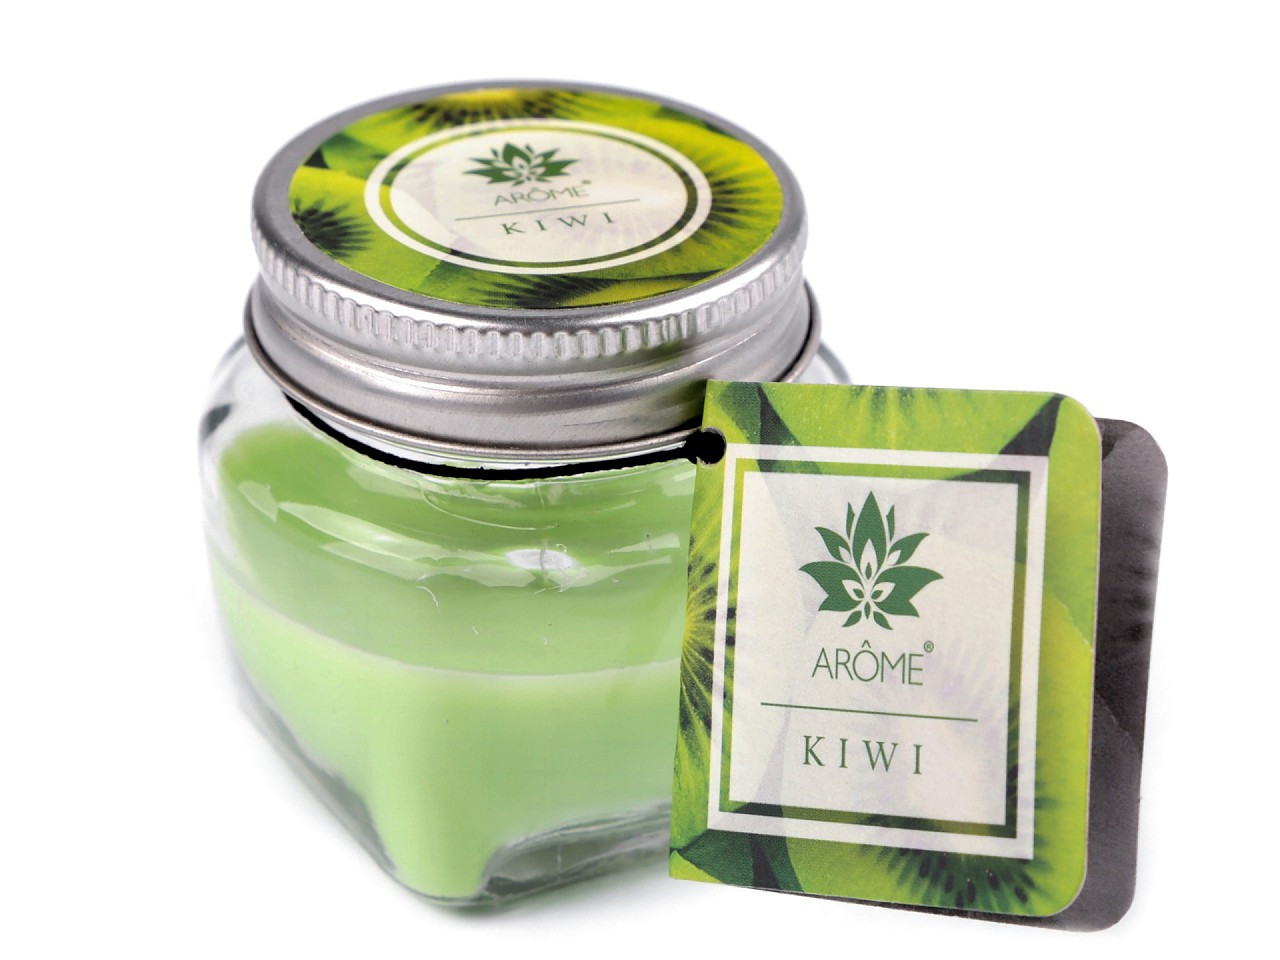 Malá vonná svíčka ve skle s jmenovkou 28 g, barva 23 (Kiwi) zelená sv.